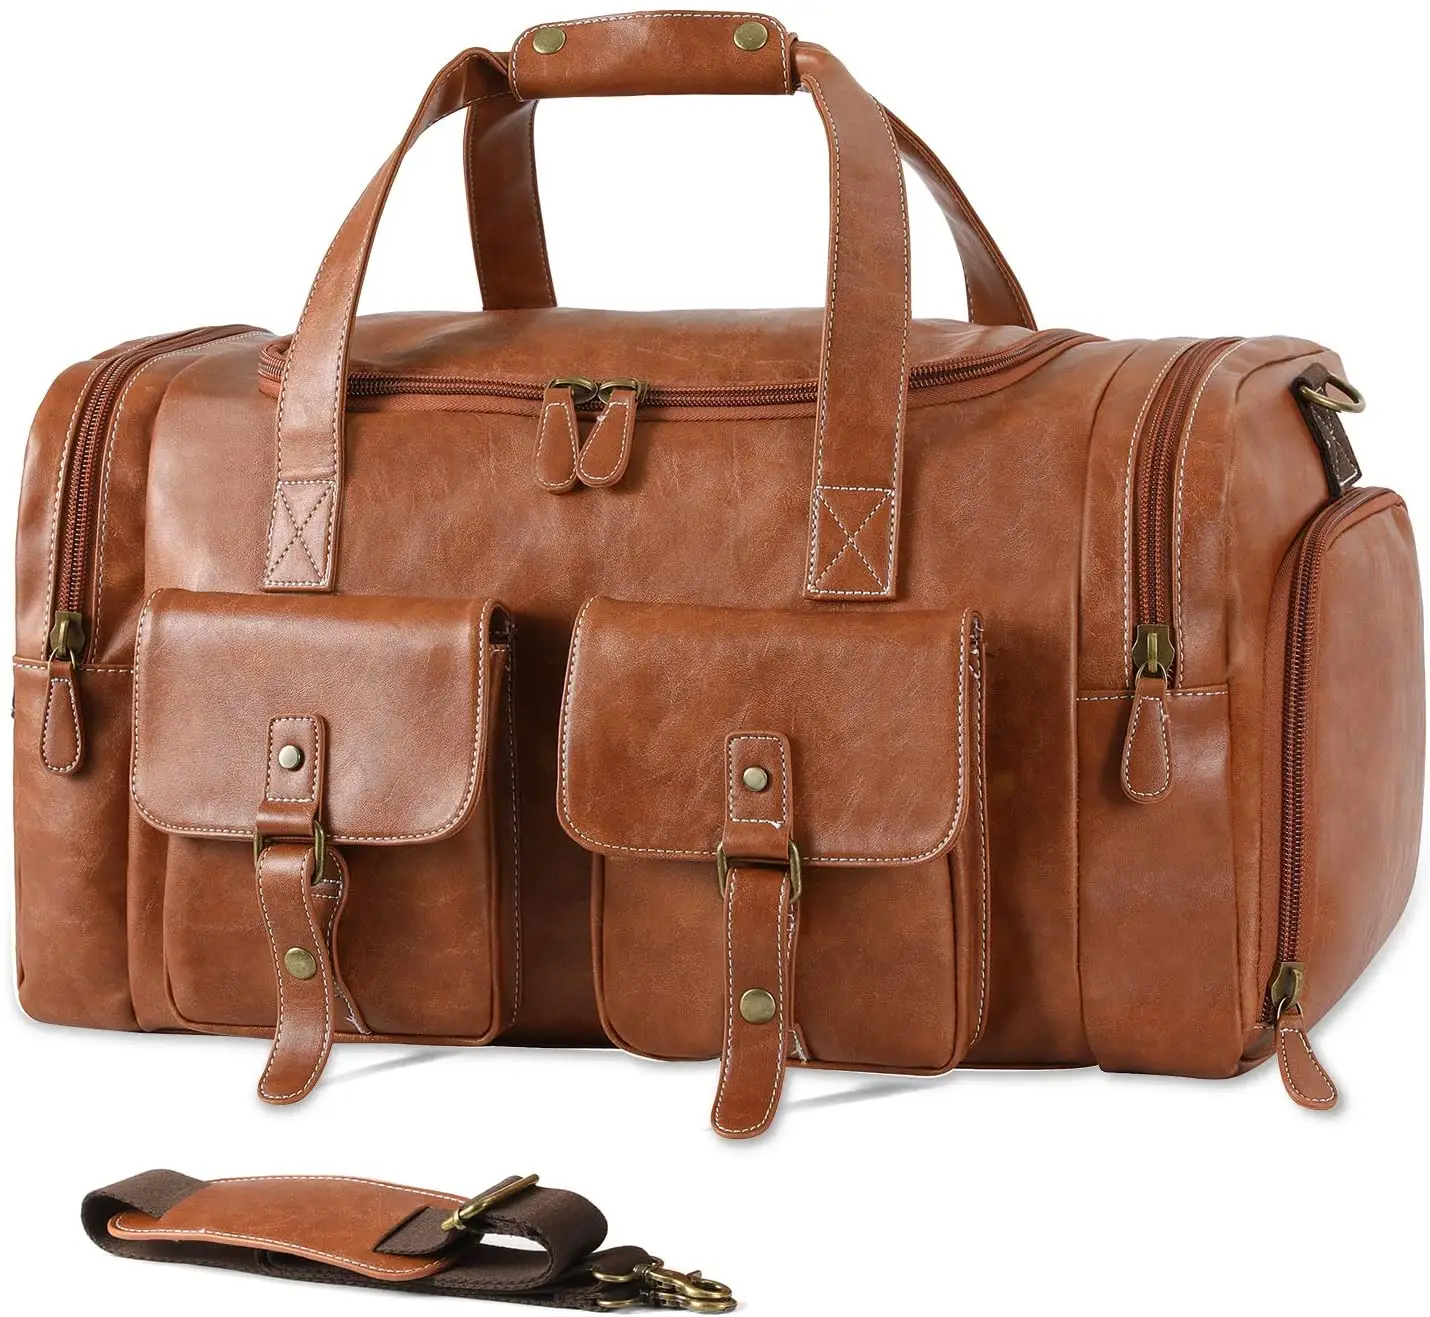 مخصص حقيبة السفر المصنوعة من القماش الخشن مع حذاء الحقيبة تحمل على حقيبة بو الجلود حقيبة لعطلة نهاية الأسبوع